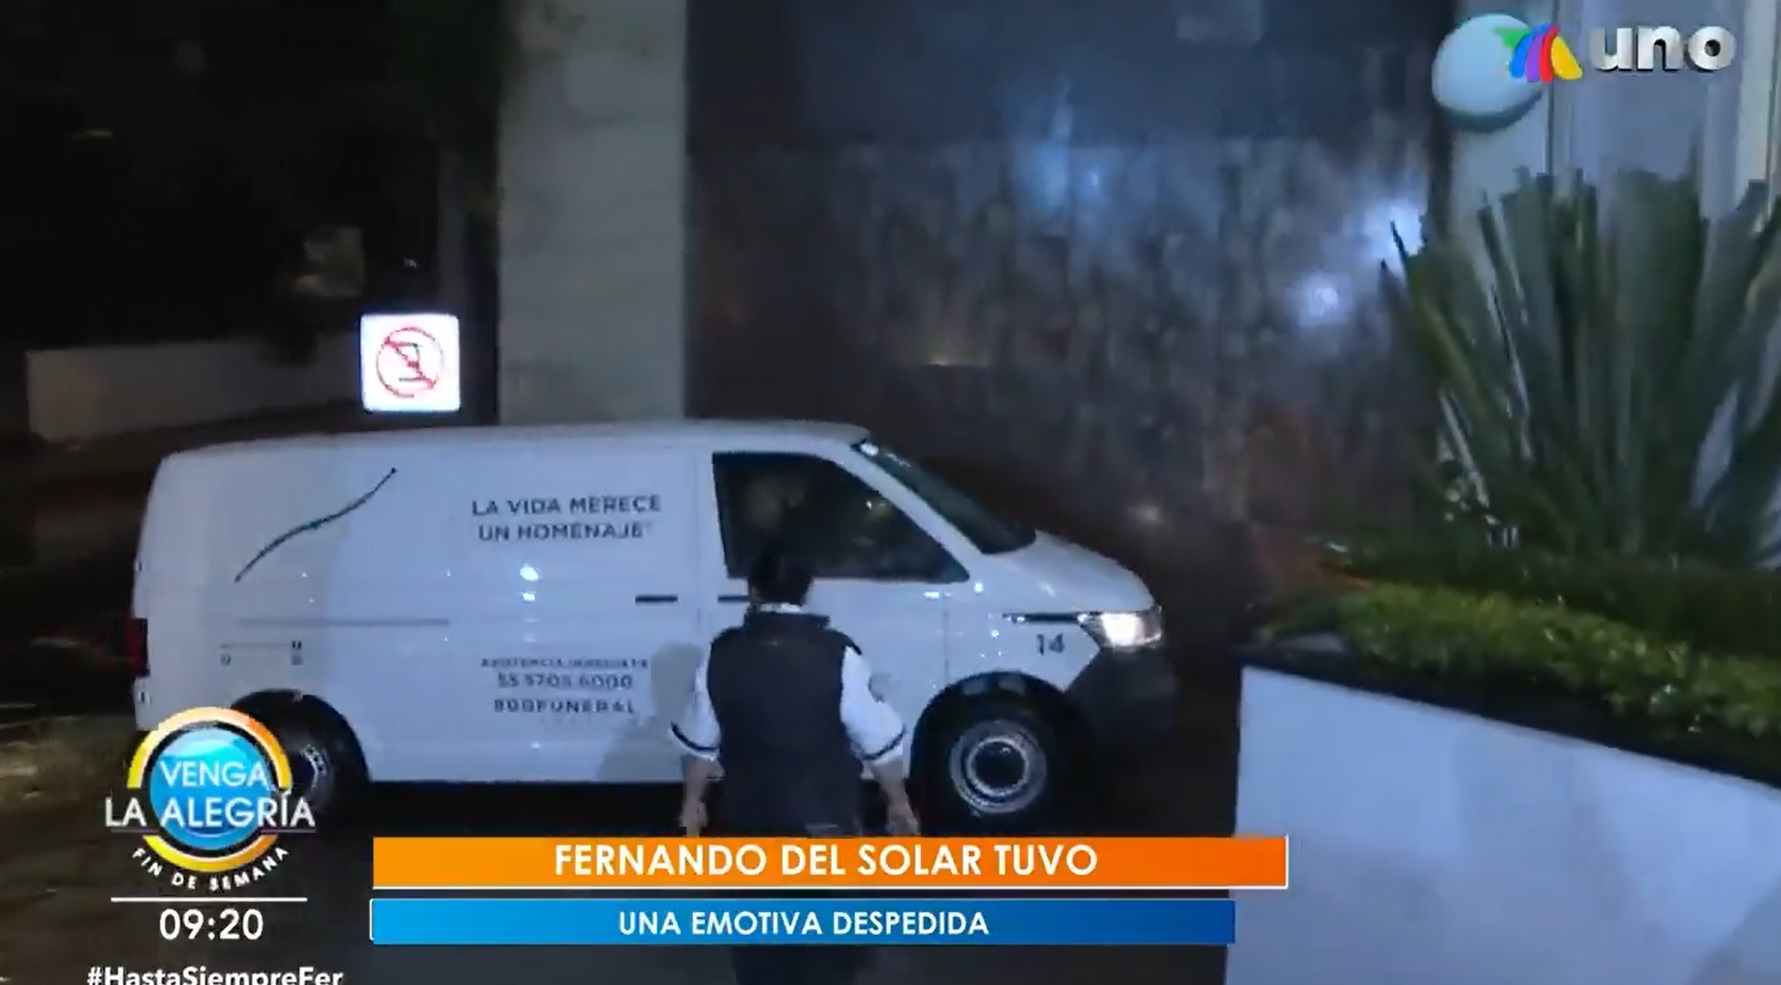 Uważa się, że ciało Fernando przybyło ciężarówką, a nie bojką, aby wprowadzić w błąd prasę, ponieważ ludzie z domu pogrzebowego twierdzili również, że czuwanie nie odbędzie się tam (Zdjęcie: zrzut ekranu/Instagram)